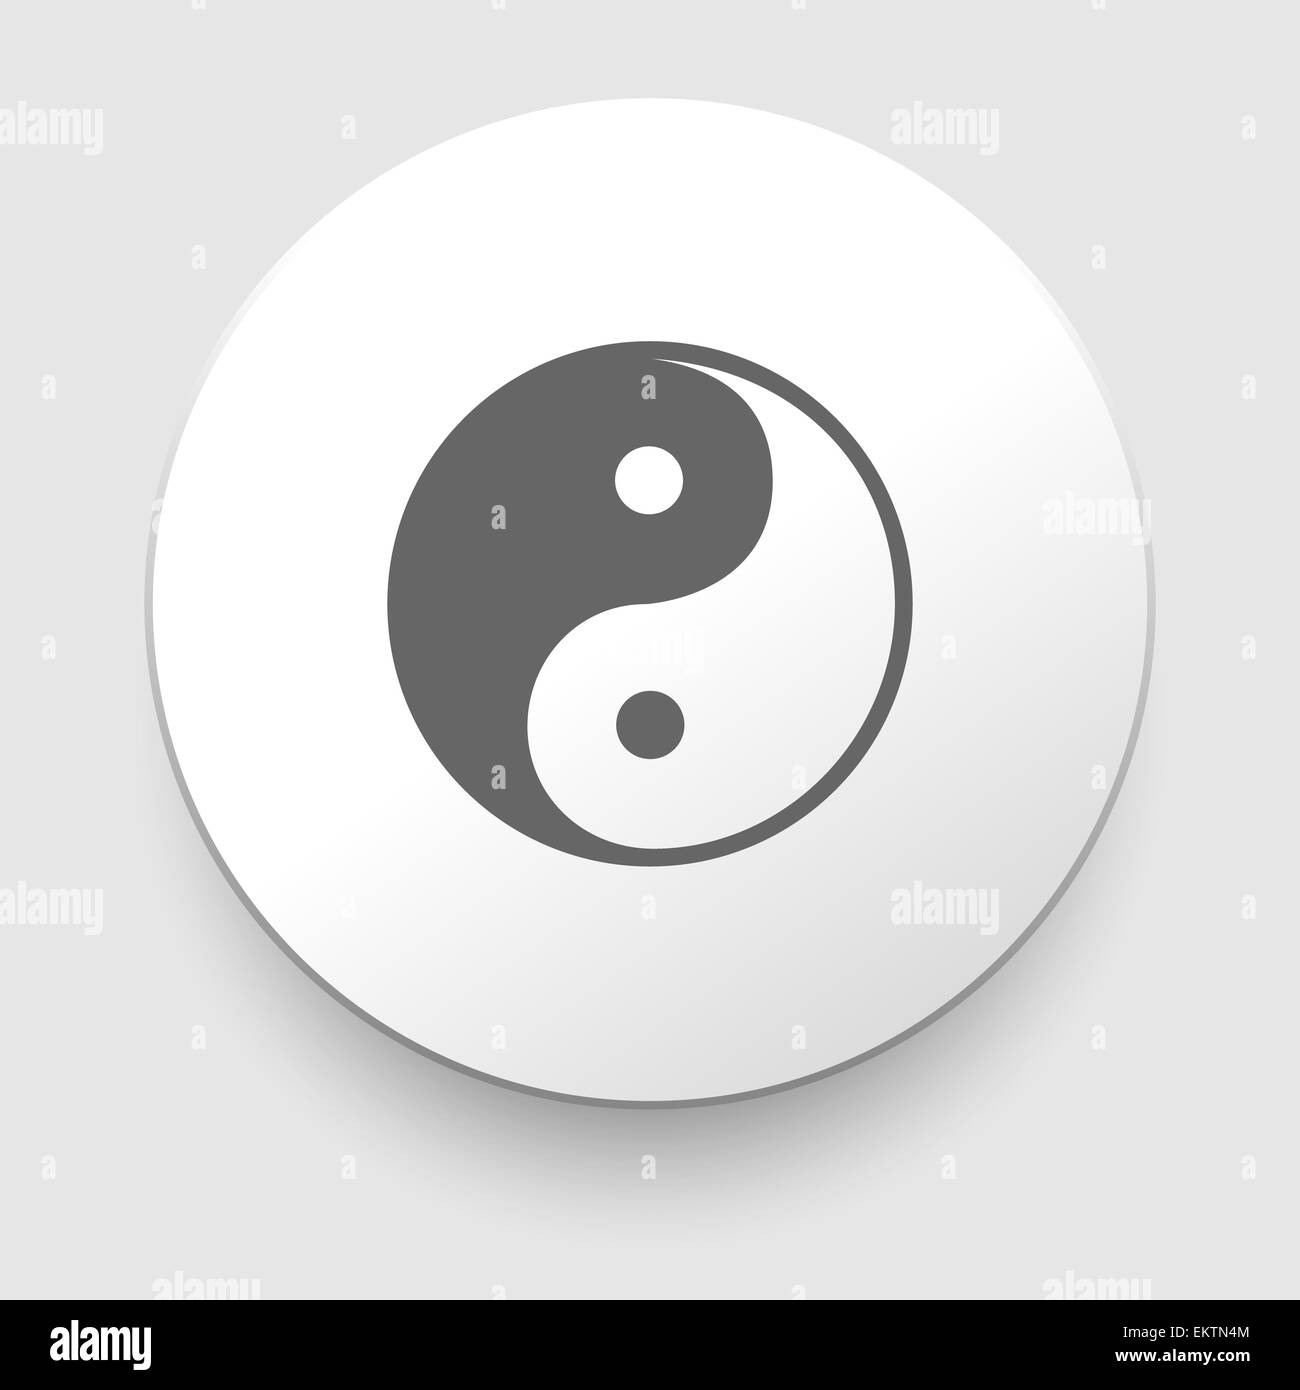 Yin and Yang symbol Stock Photo